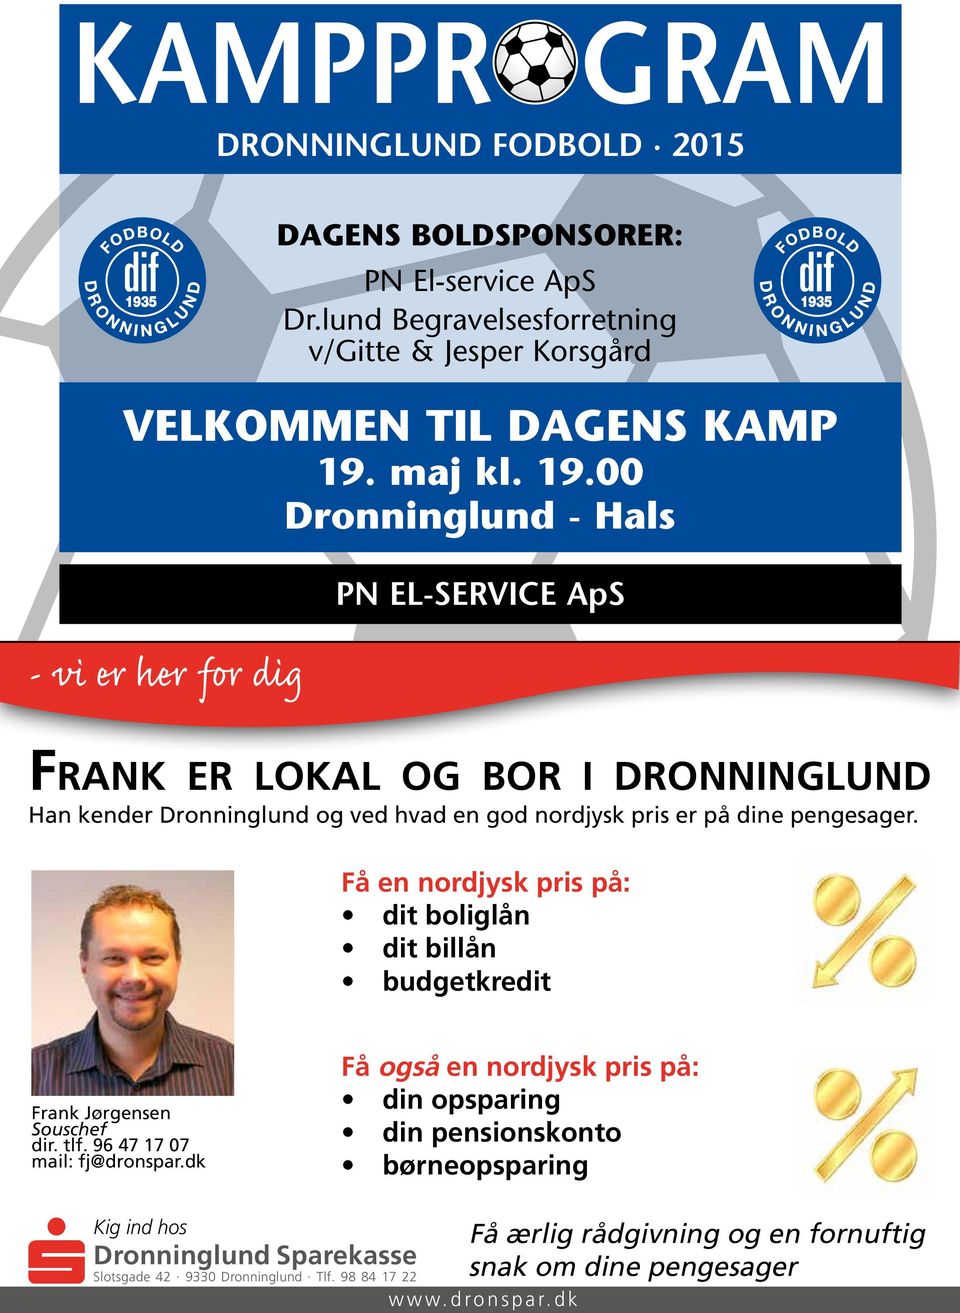 Få en nordjysk pris på: dit boliglån dit billån budgetkredit Frank Jørgensen Souschef dir. tlf. 96 47 17 07 mail: fj@dronspar.